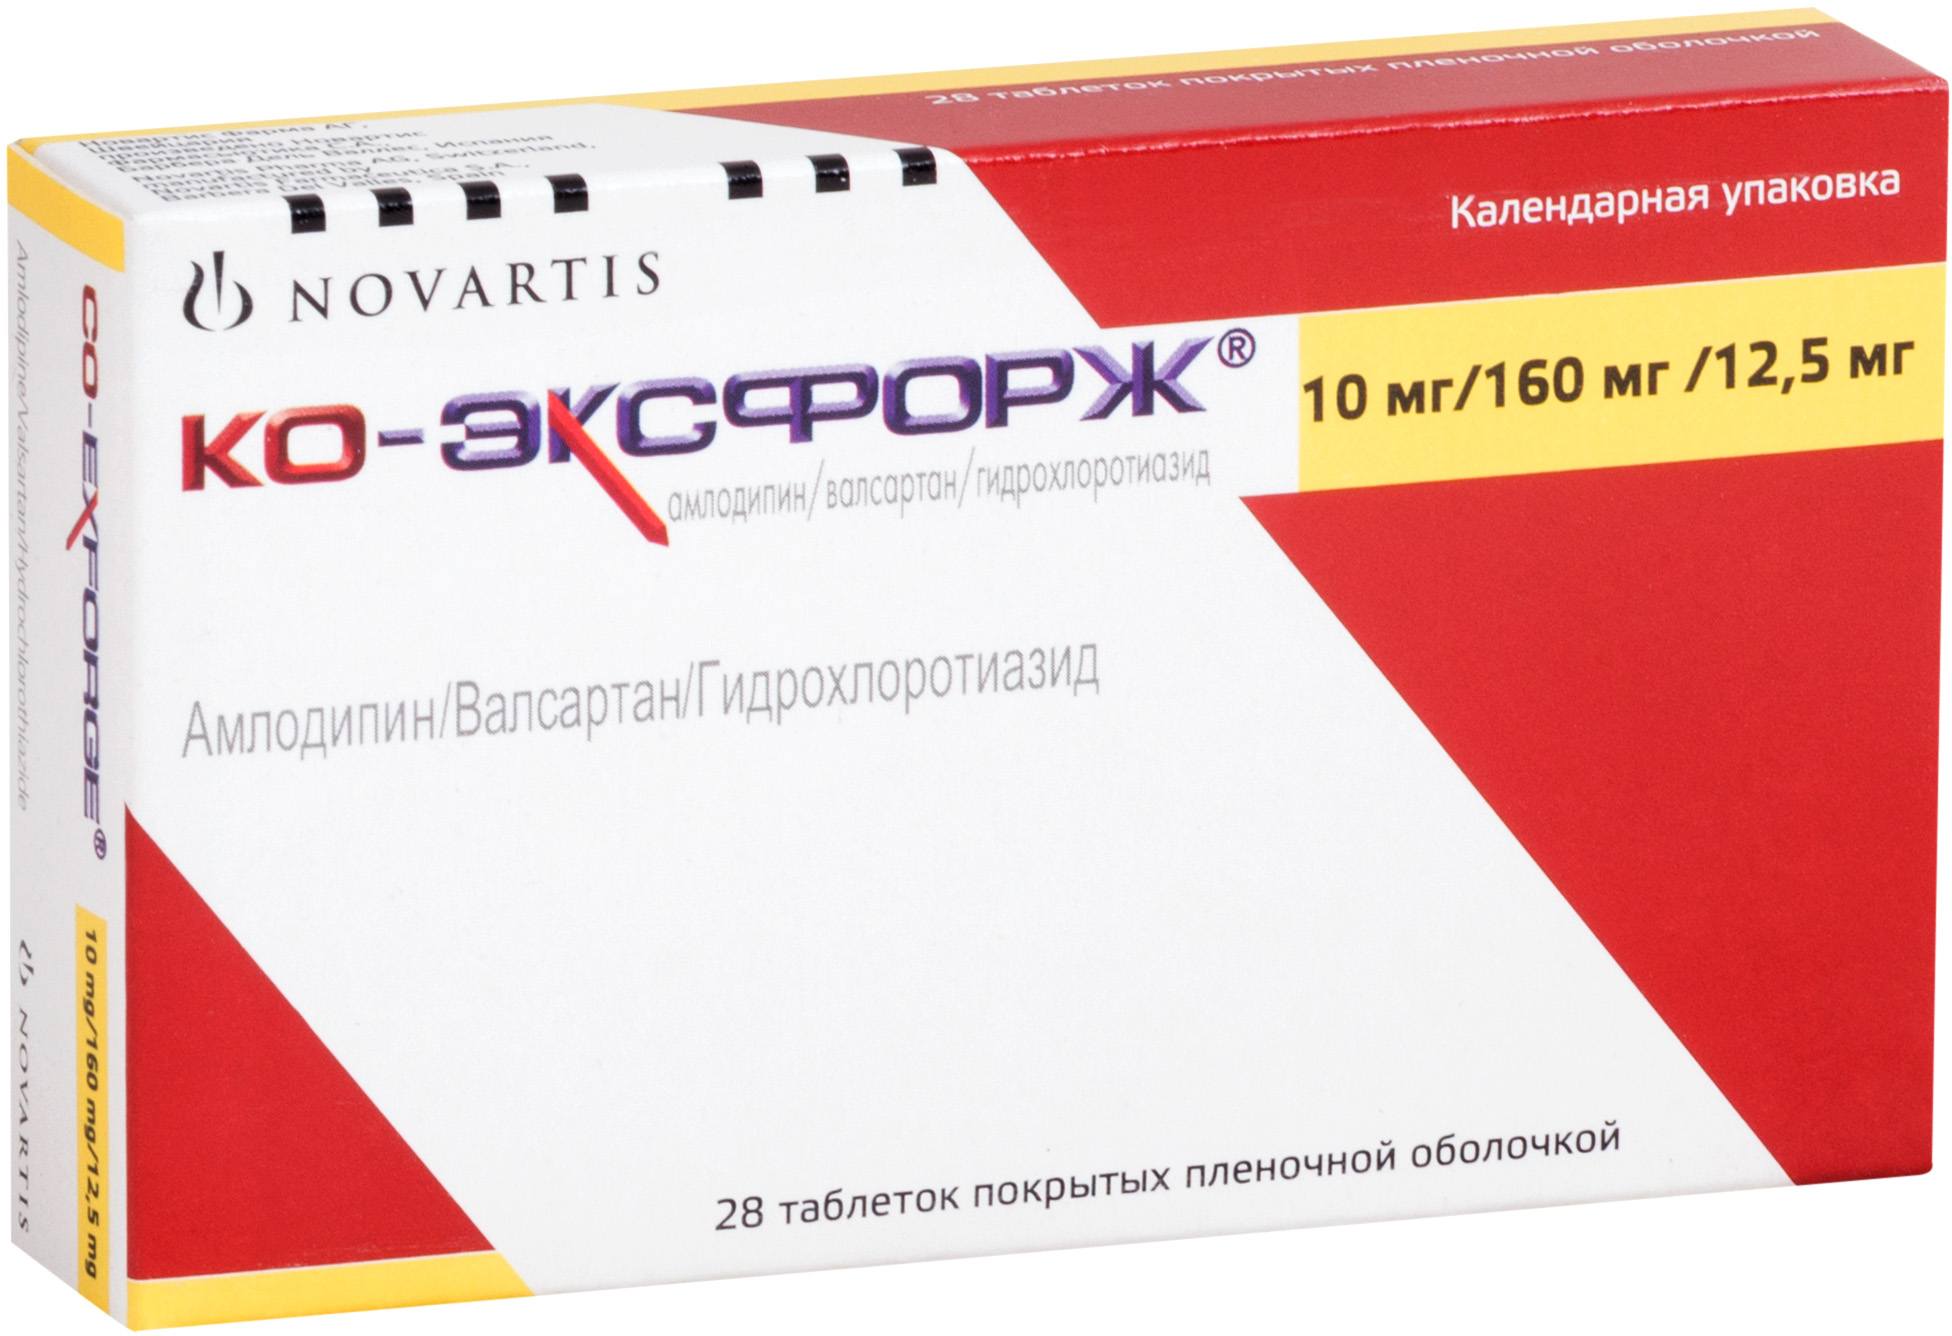 Ко-эксфорж таблетки покрытые пленочной оболочкой 10 мг+160 мг+12,5 мг 28 шт.